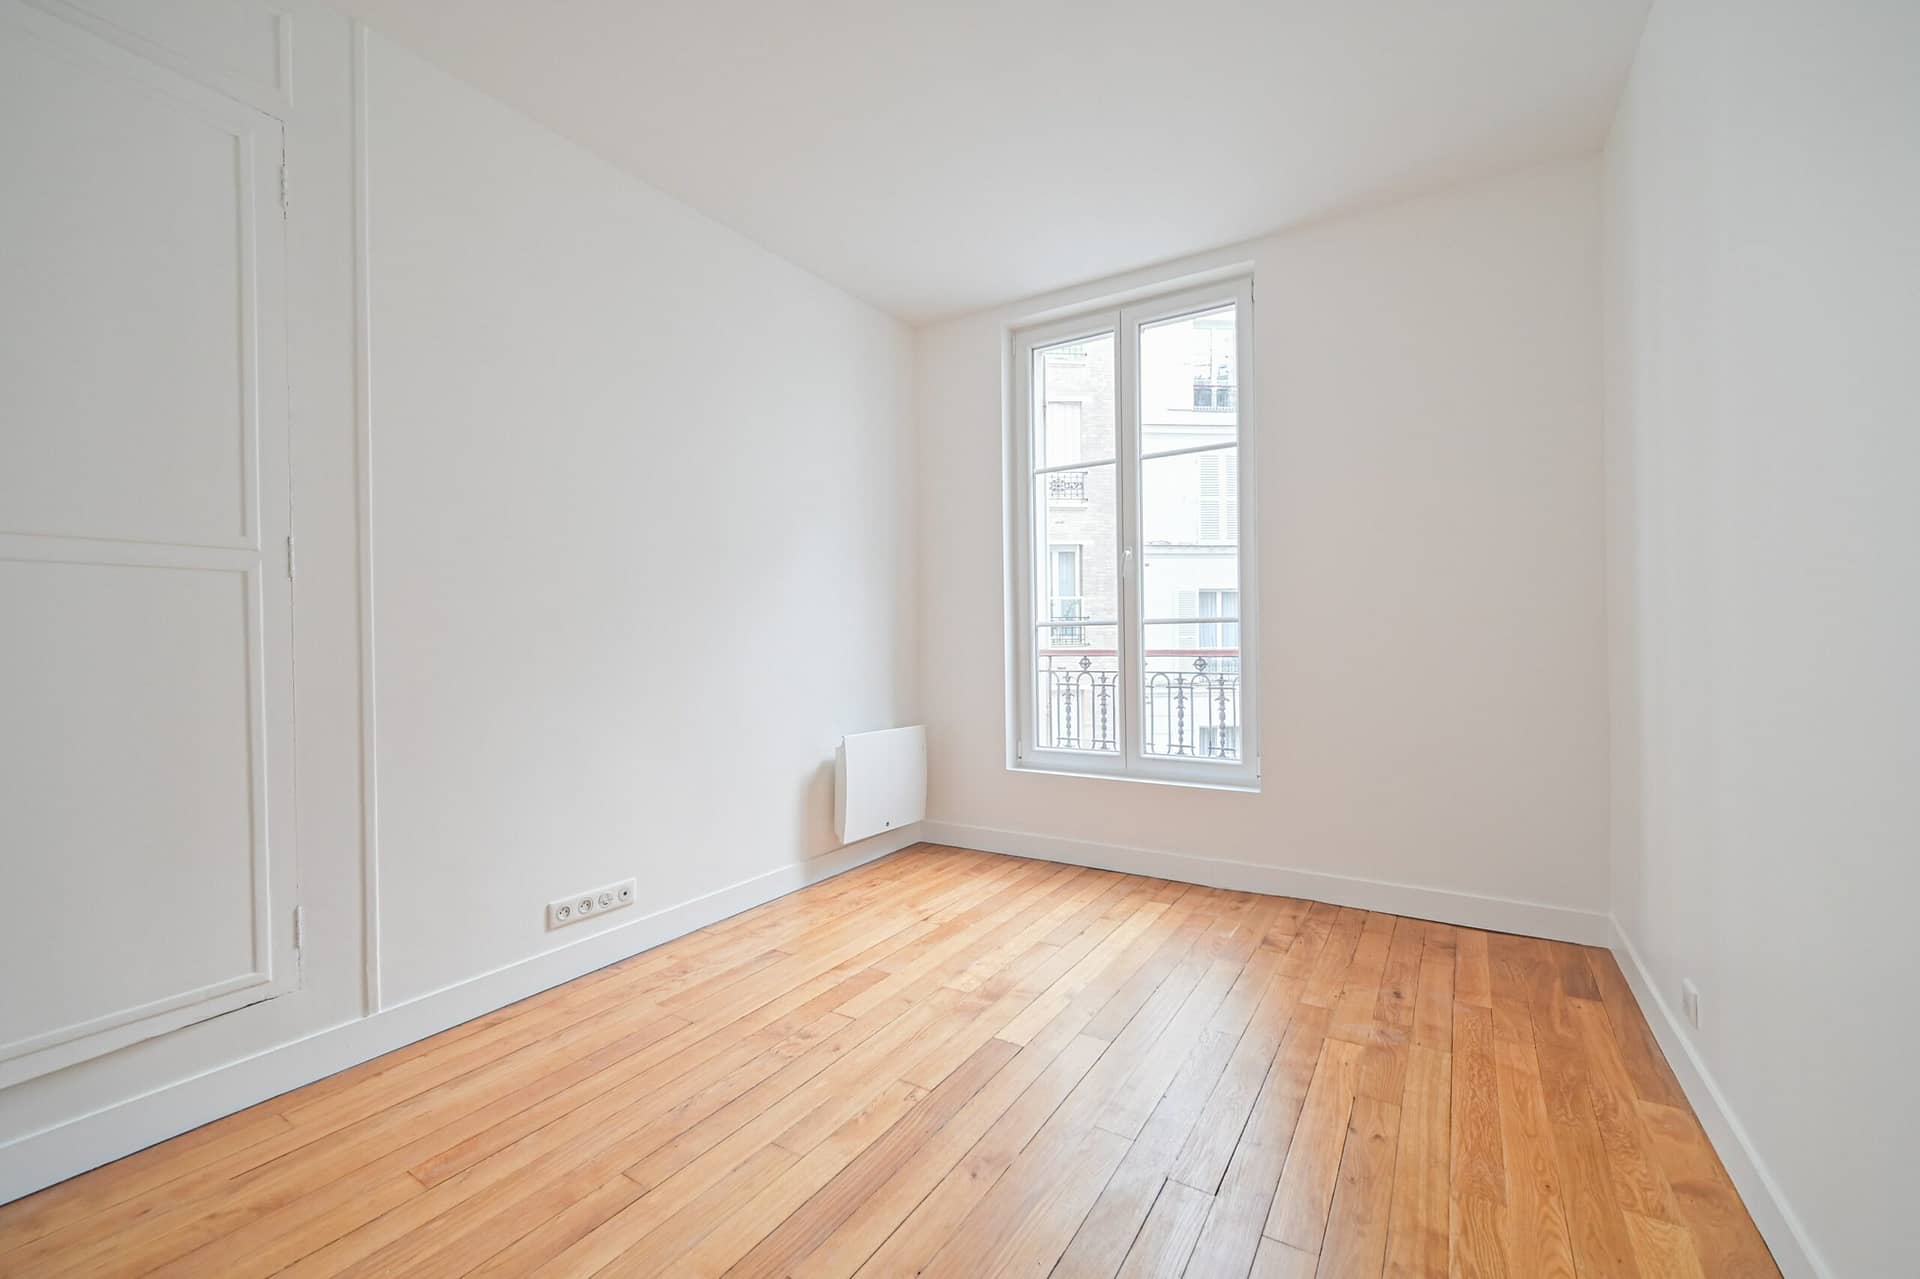 Chambre à coucher d'un appartement situé à Paris 15ème Motte Picquet Grenelle